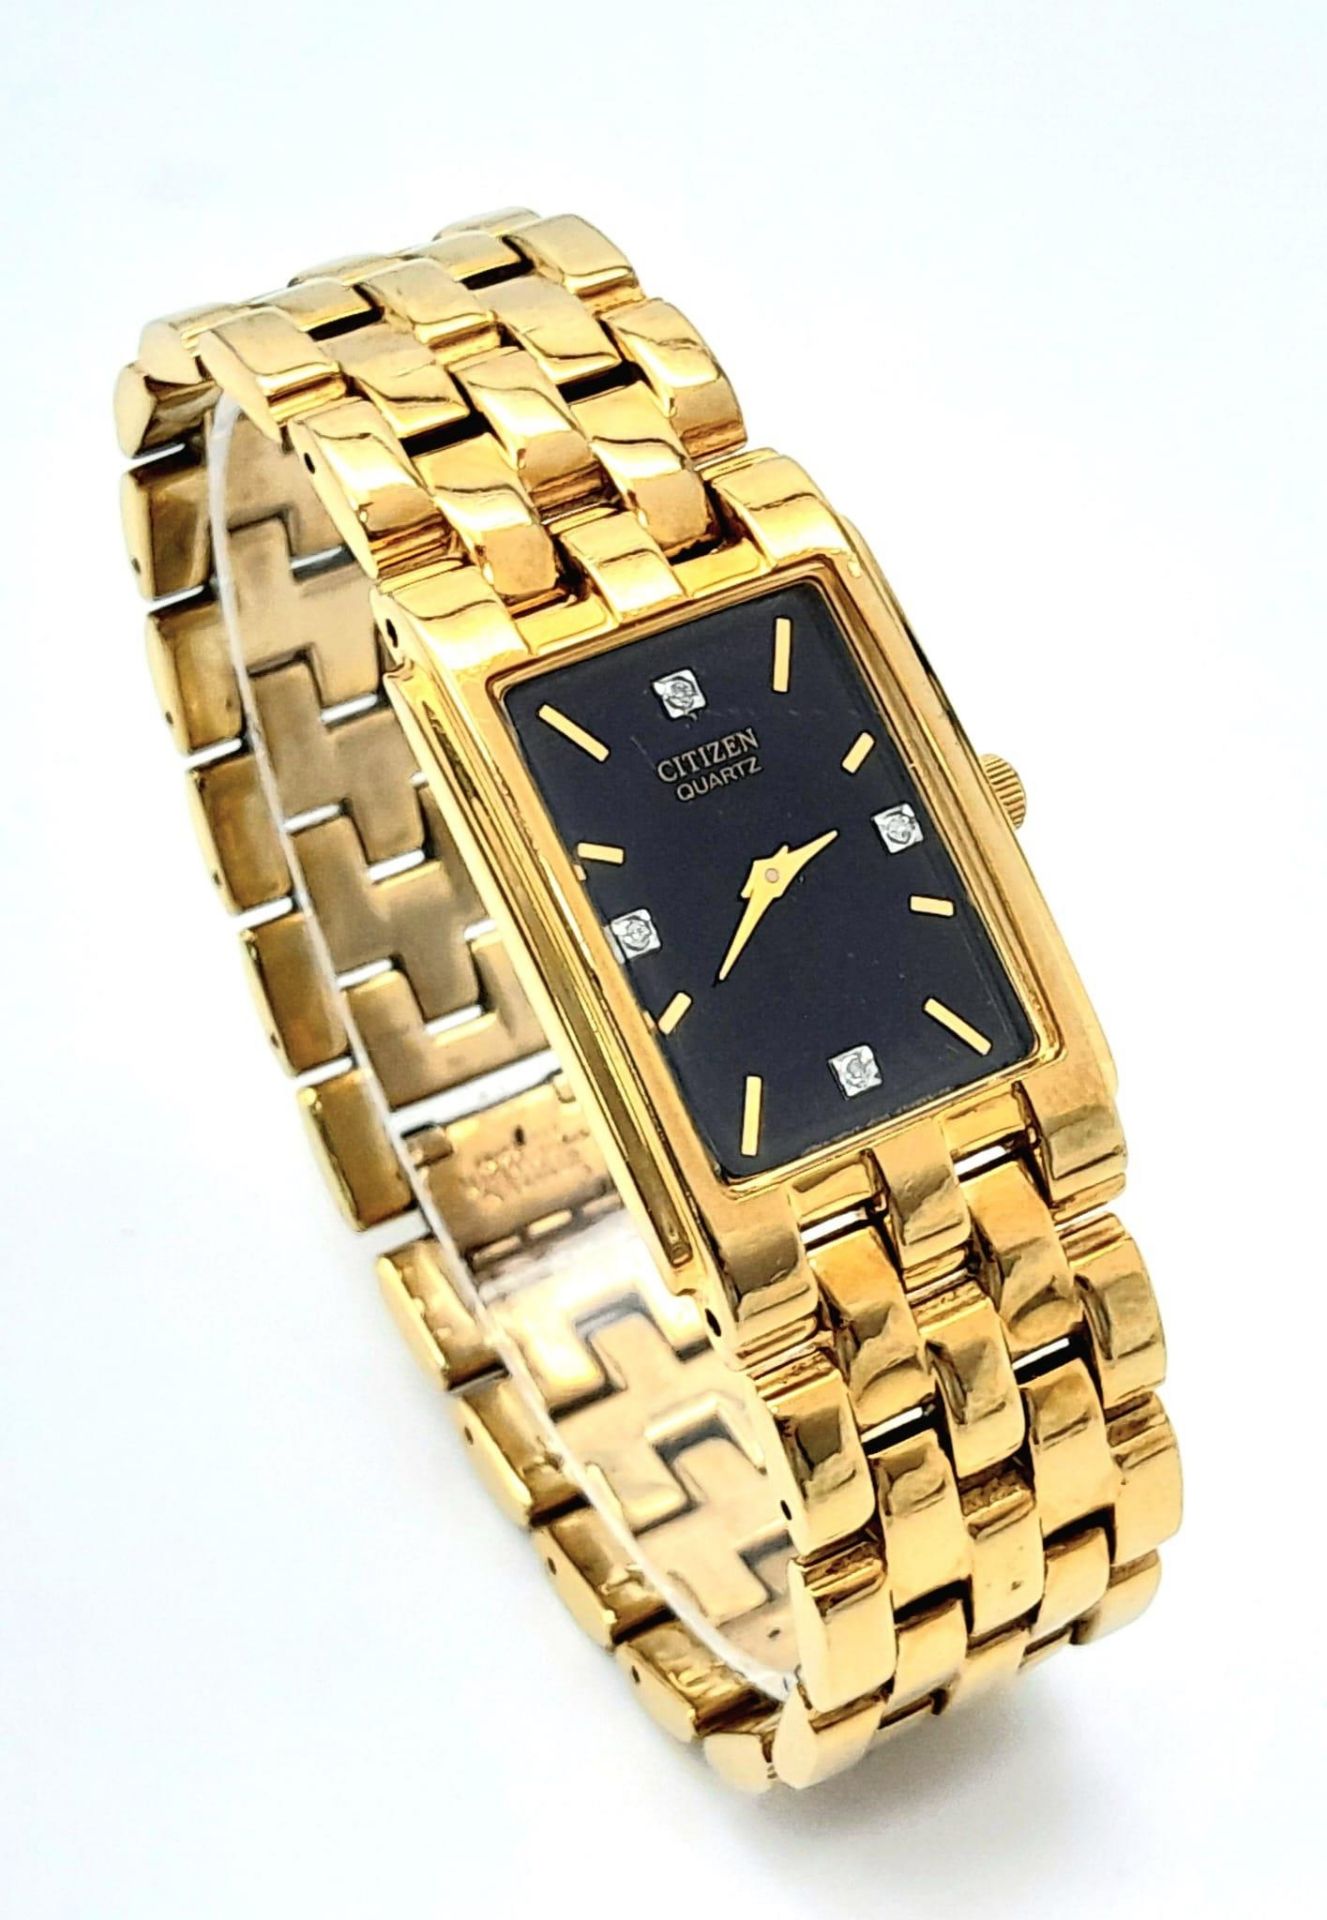 A Gold Plated Citizen Quartz Gents Dress Watch. Gold plated bracelet and rectangular case - 25mm. - Bild 3 aus 6